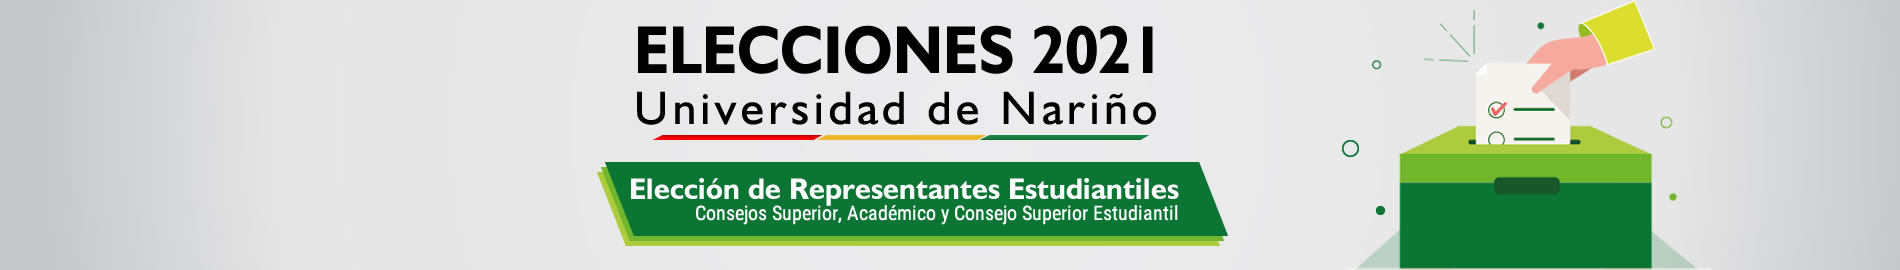 banner_Elecciones_Consejos_Estudiantes